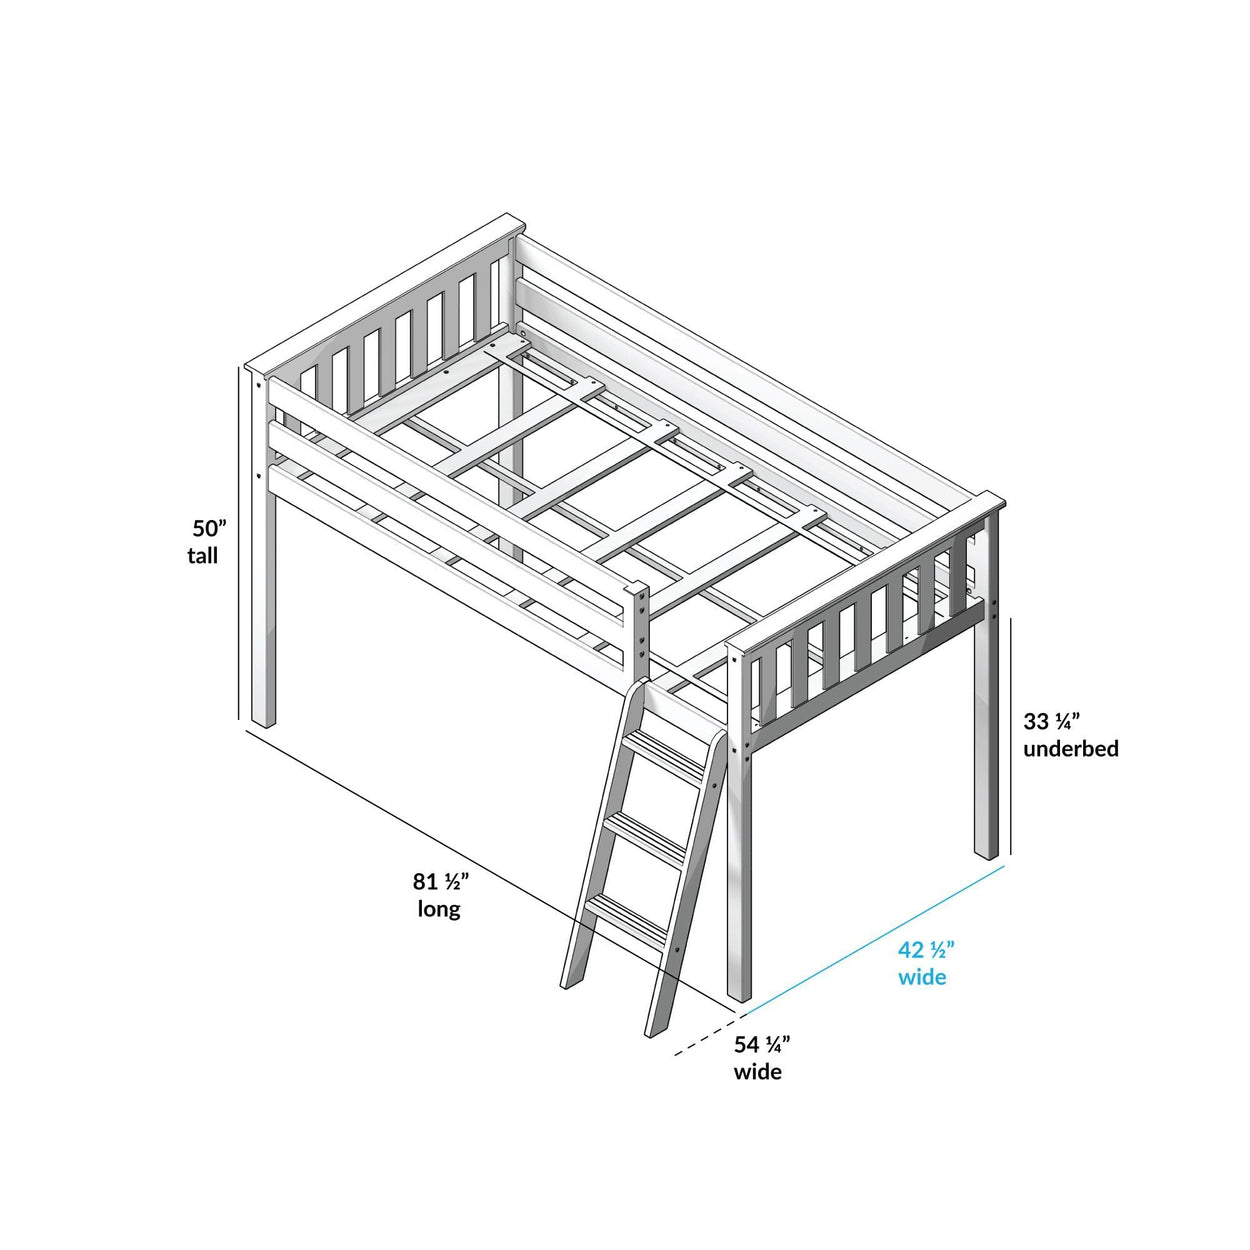 180212-121 : Loft Beds Twin-Size Low Loft, Grey